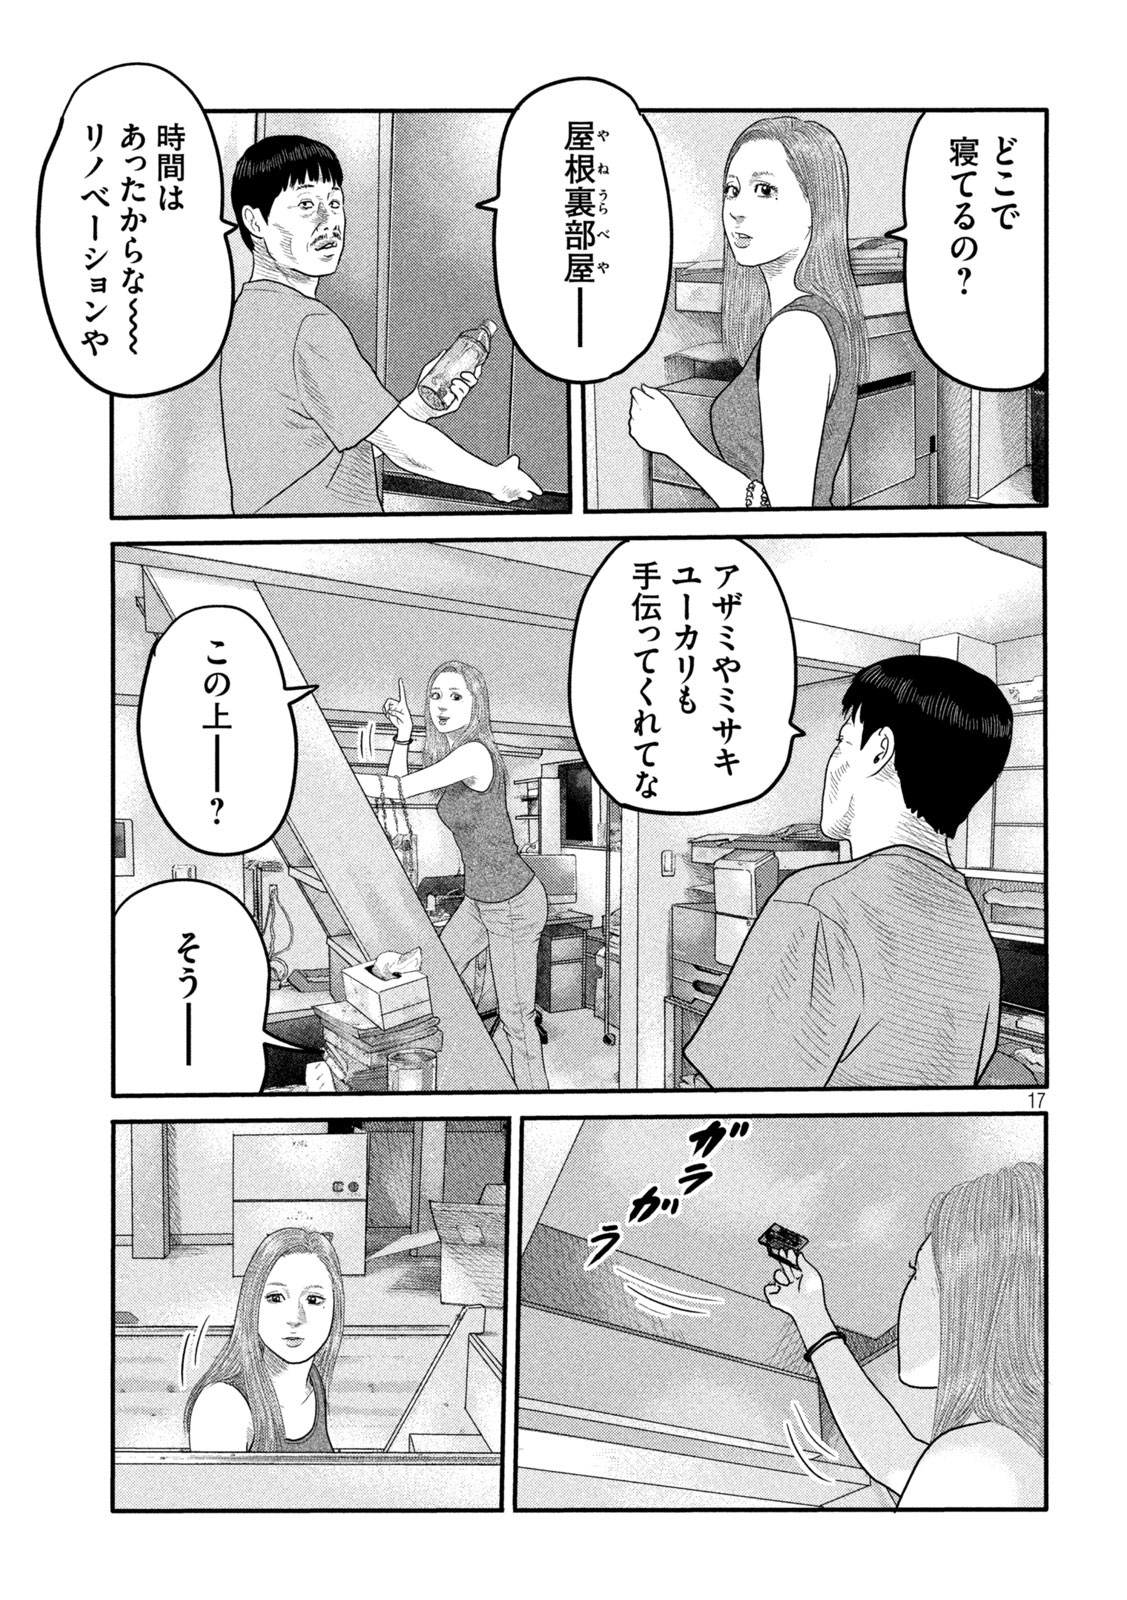 ザ・ファブル The Second Contact 第8話 - Page 17